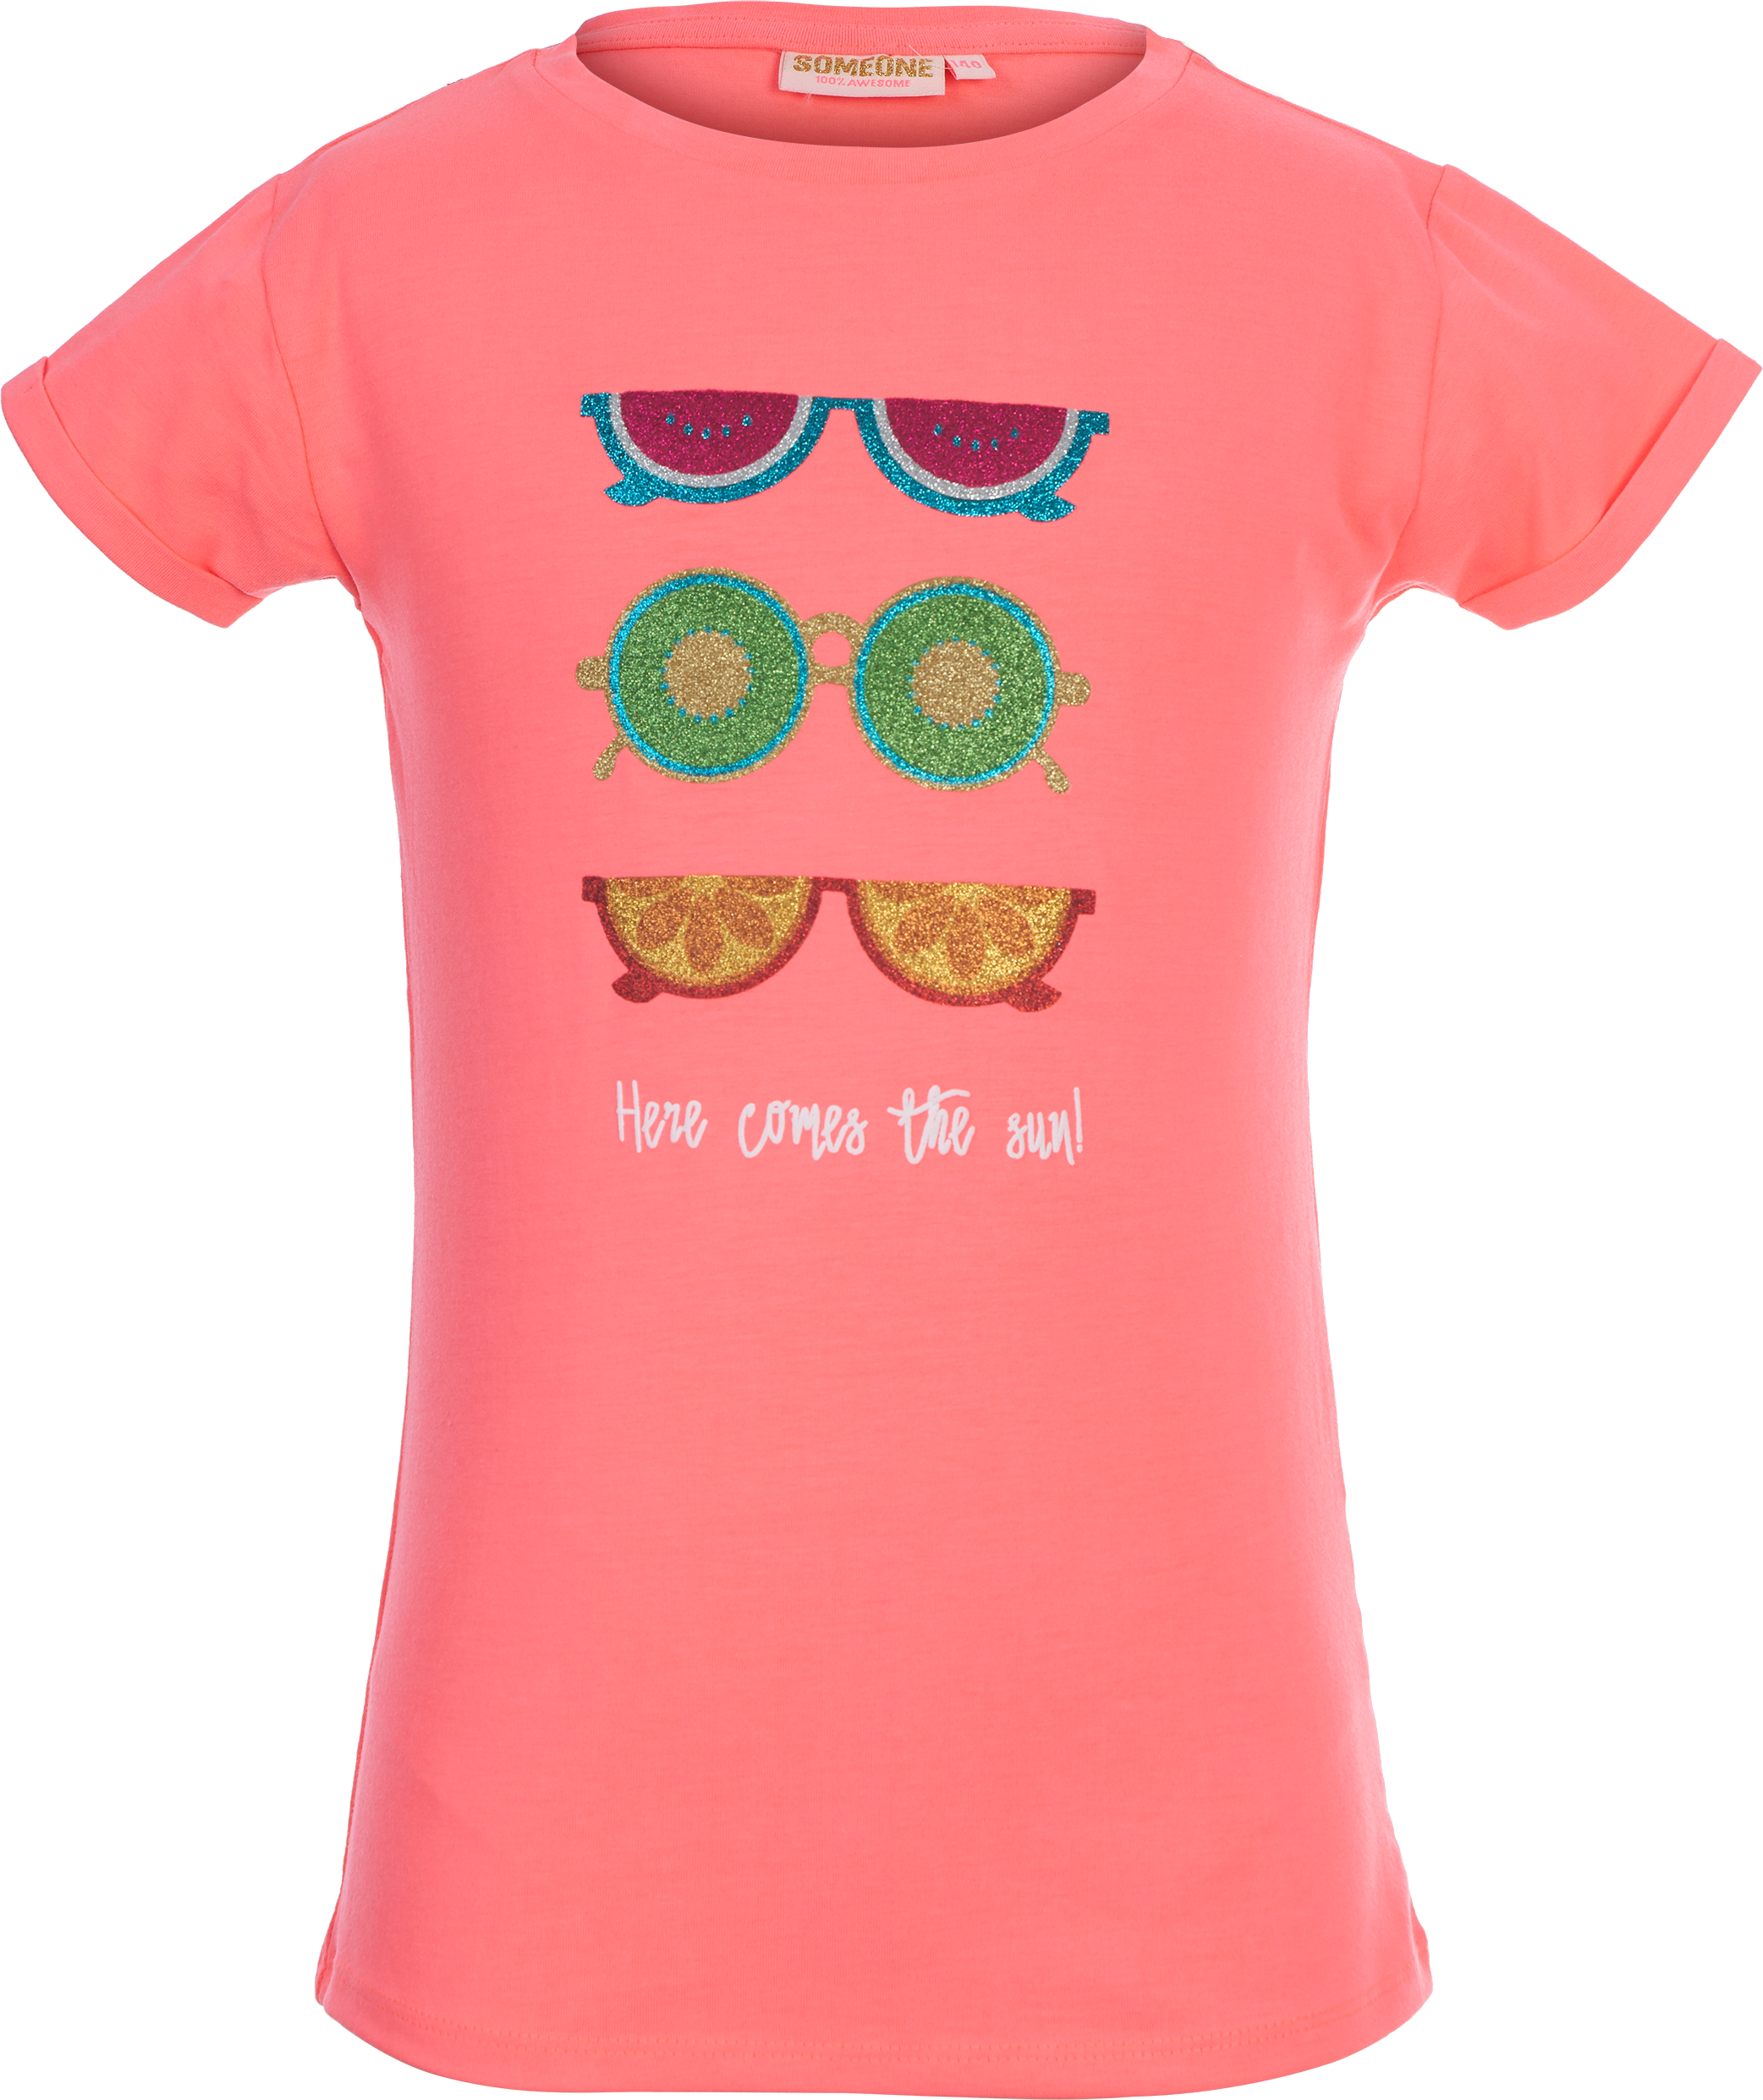 Meisjes T-shirt Here comes the Sun! van Someone in de kleur FLUO CORAL in maat 140.